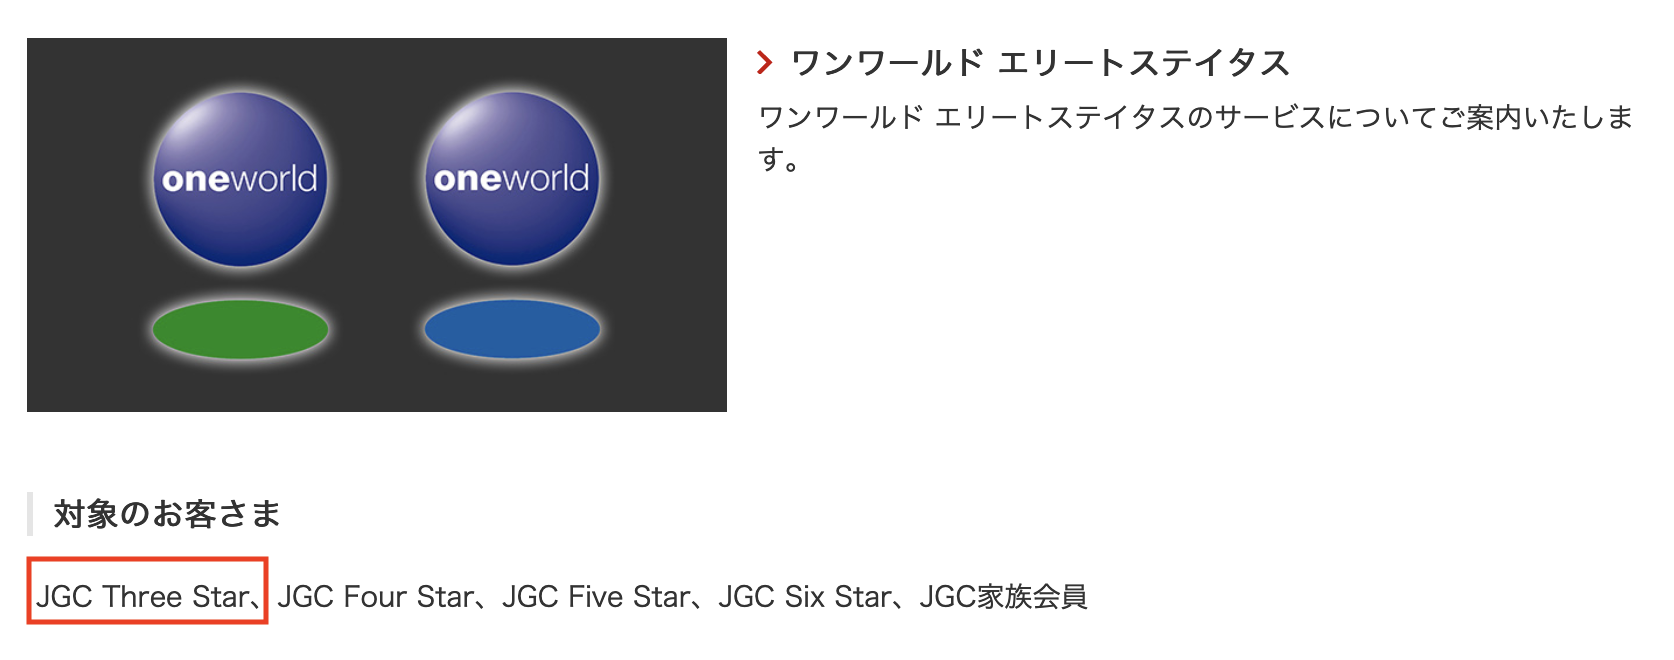 JCG Three Star「ワンワールドエリートステータス」